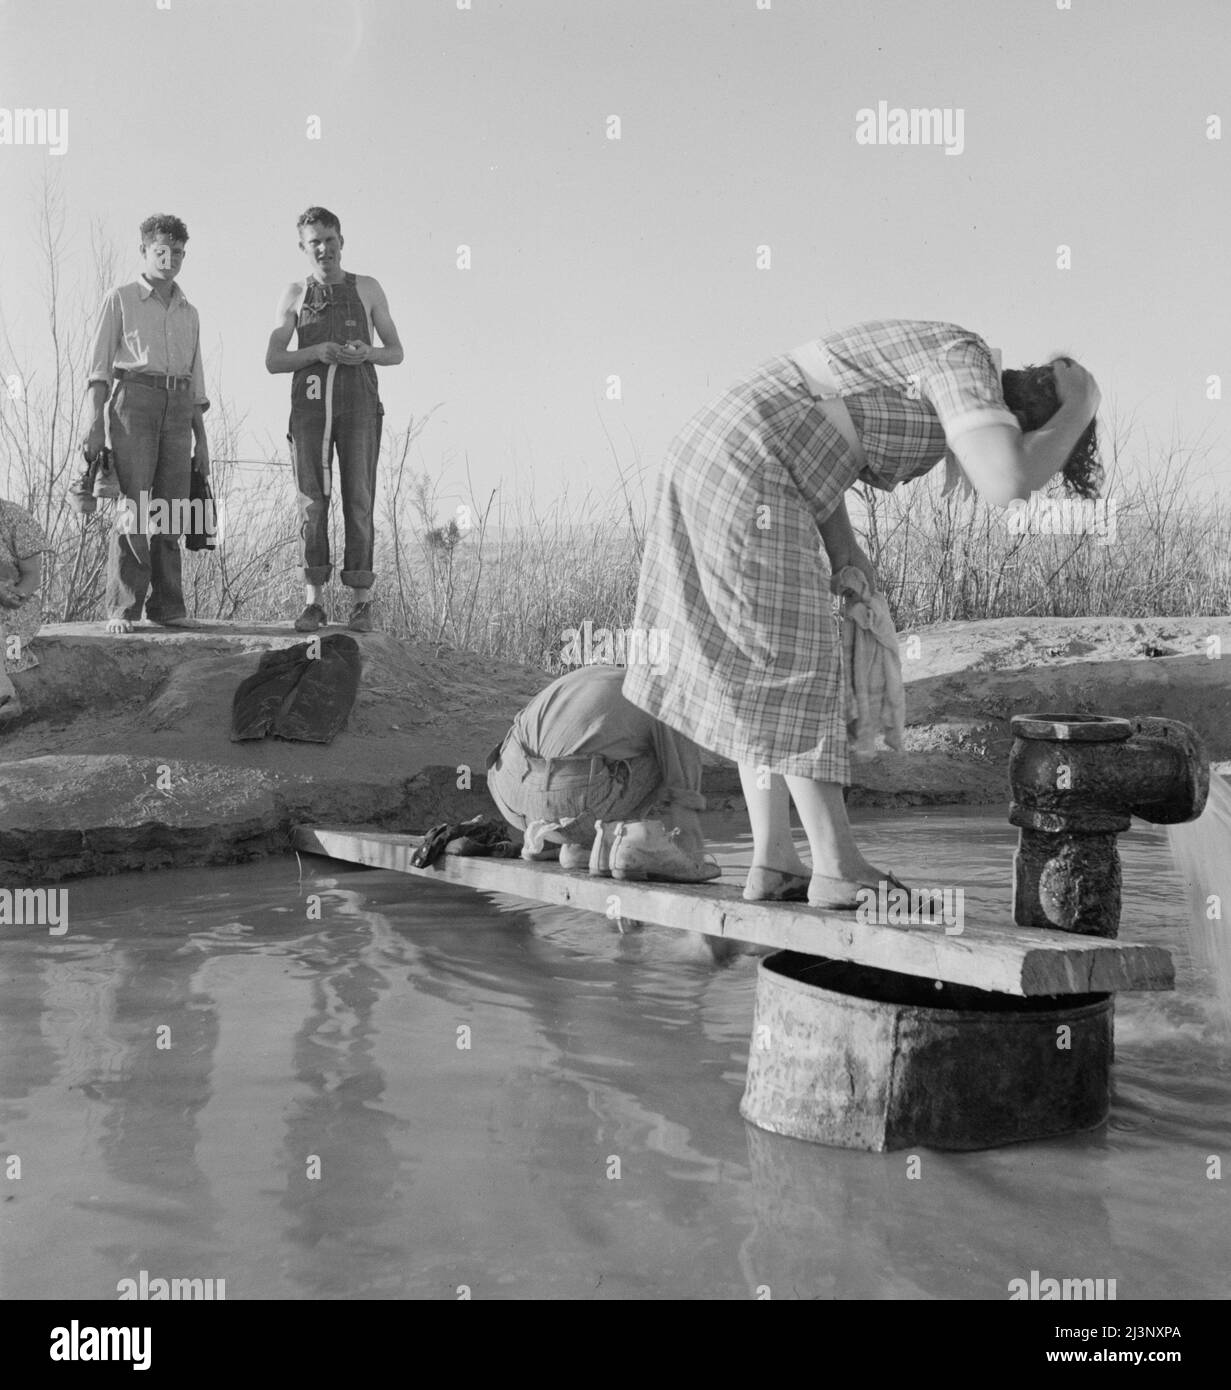 Oklahoma Wanderarbeiter waschen sich in einer heißen Quelle in der Wüste. Imperial Valley, Kalifornien. Stockfoto